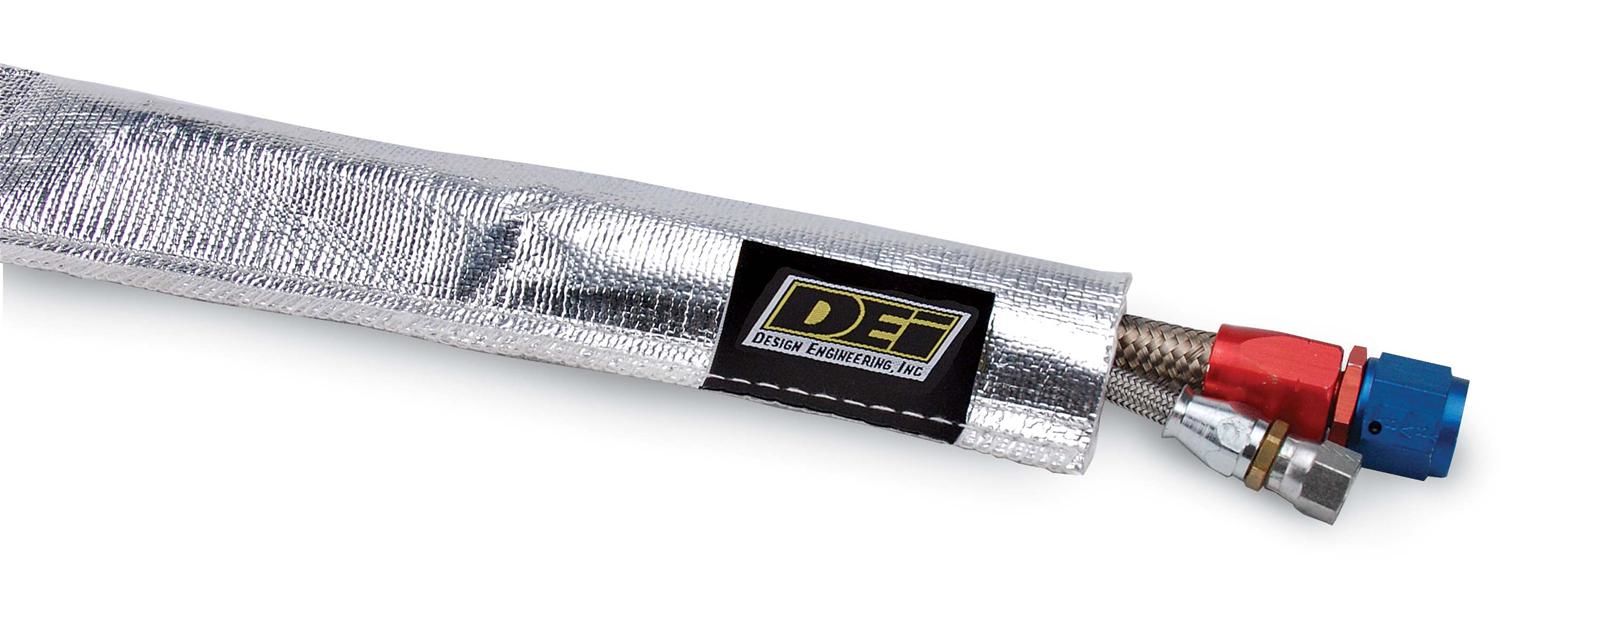 DEI 10419 - Heat Sheath, Aluminized Sleeving 1 in x 3 ft